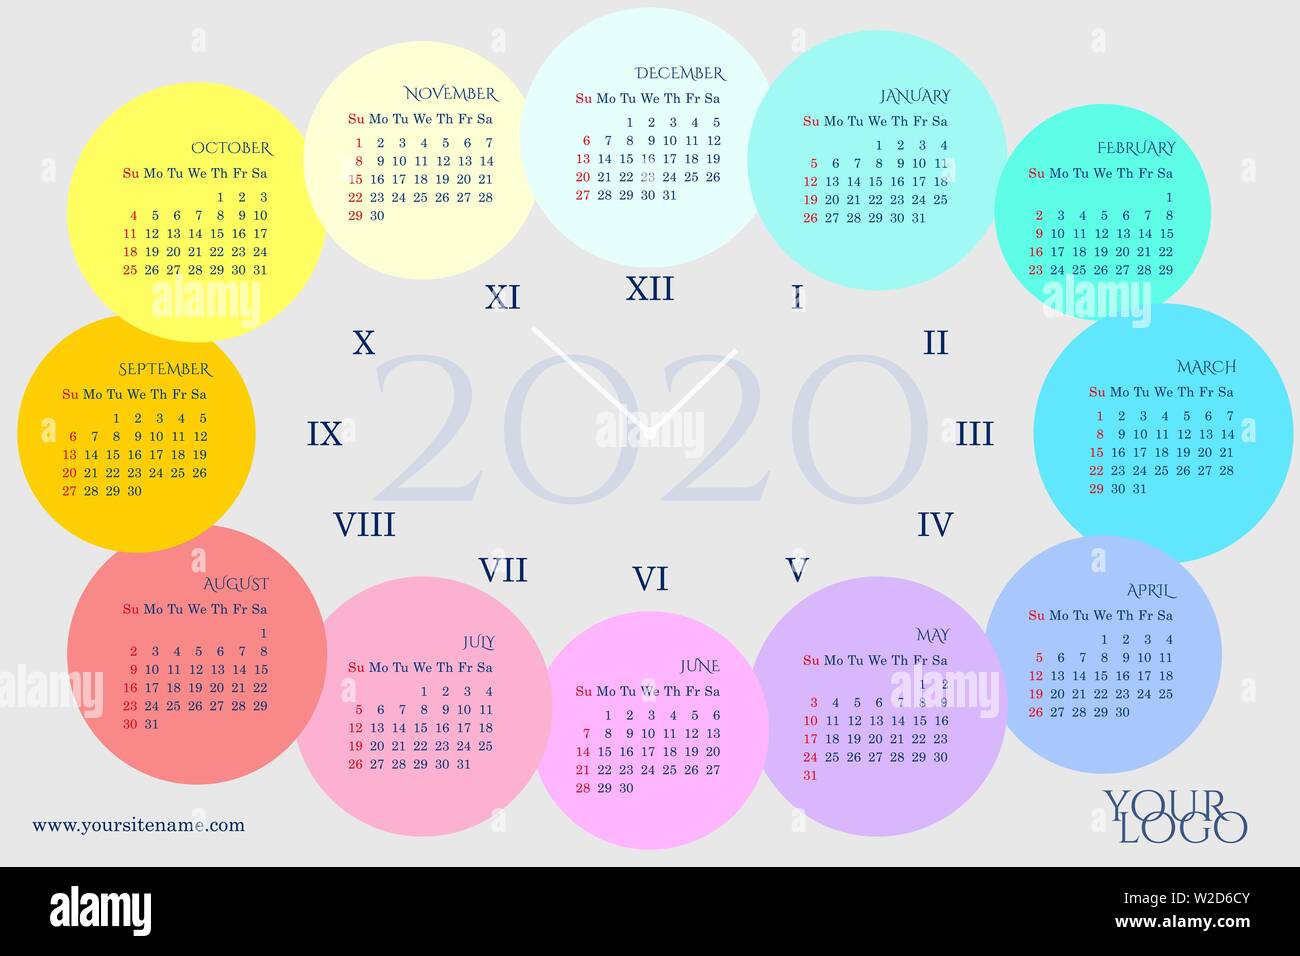 Dans l'horloge calendrier 2020 formulaire avec mois en cercles arc-en-ciel, les jours de la semaine, les chiffres romains. Dimanche en rouge. Arrière-plan gris perlé Illustration de Vecteur